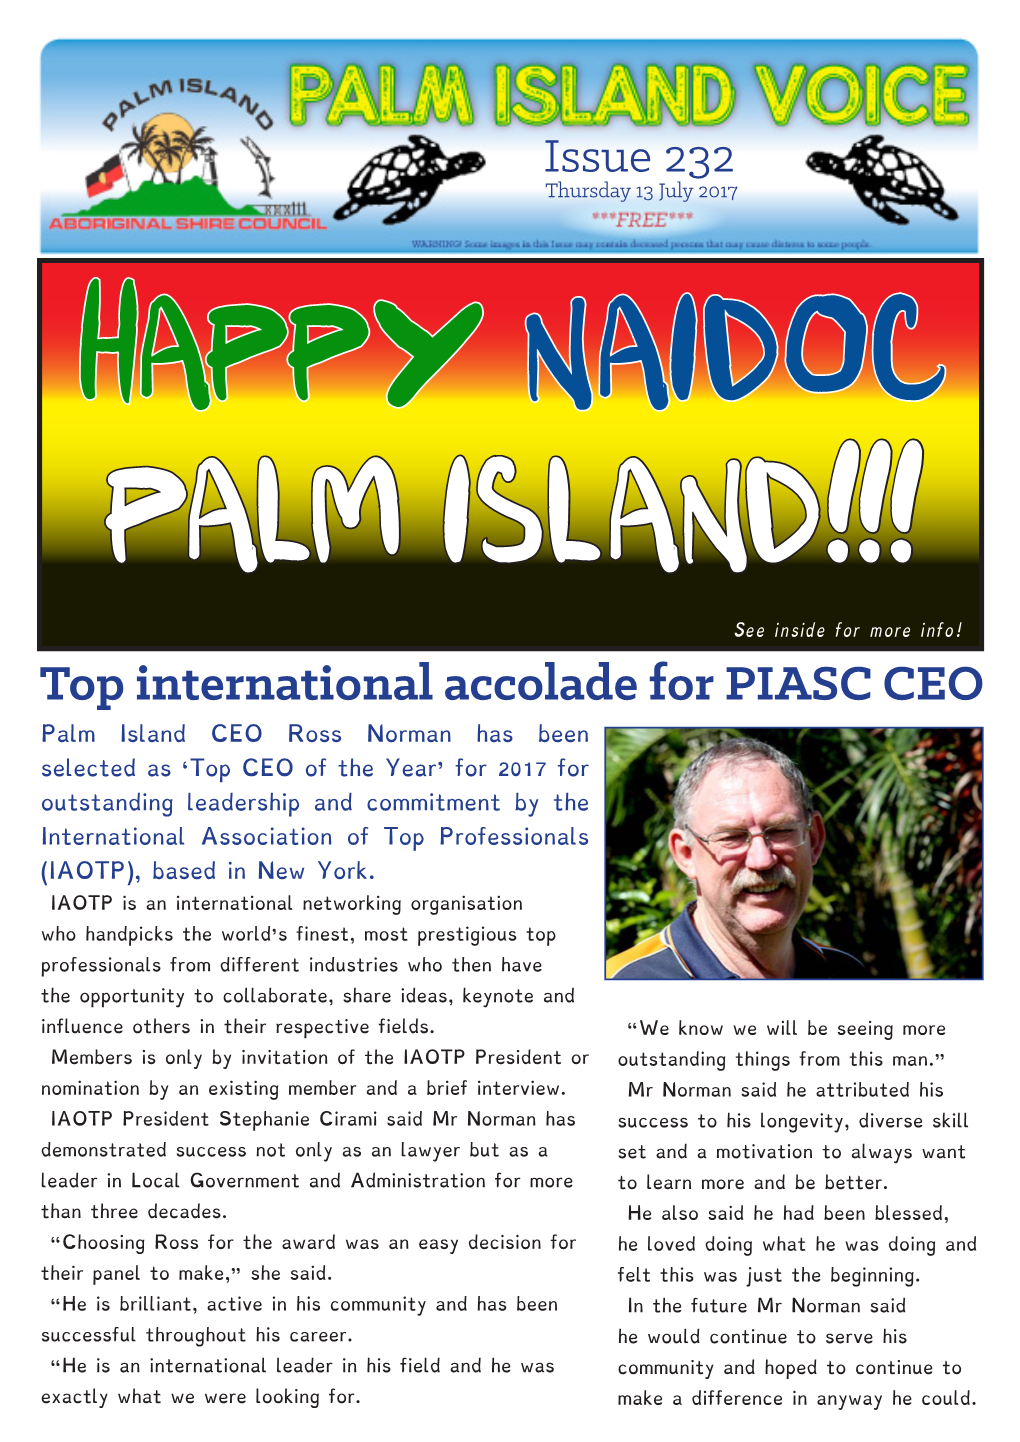 Top International Accolade for PIASC